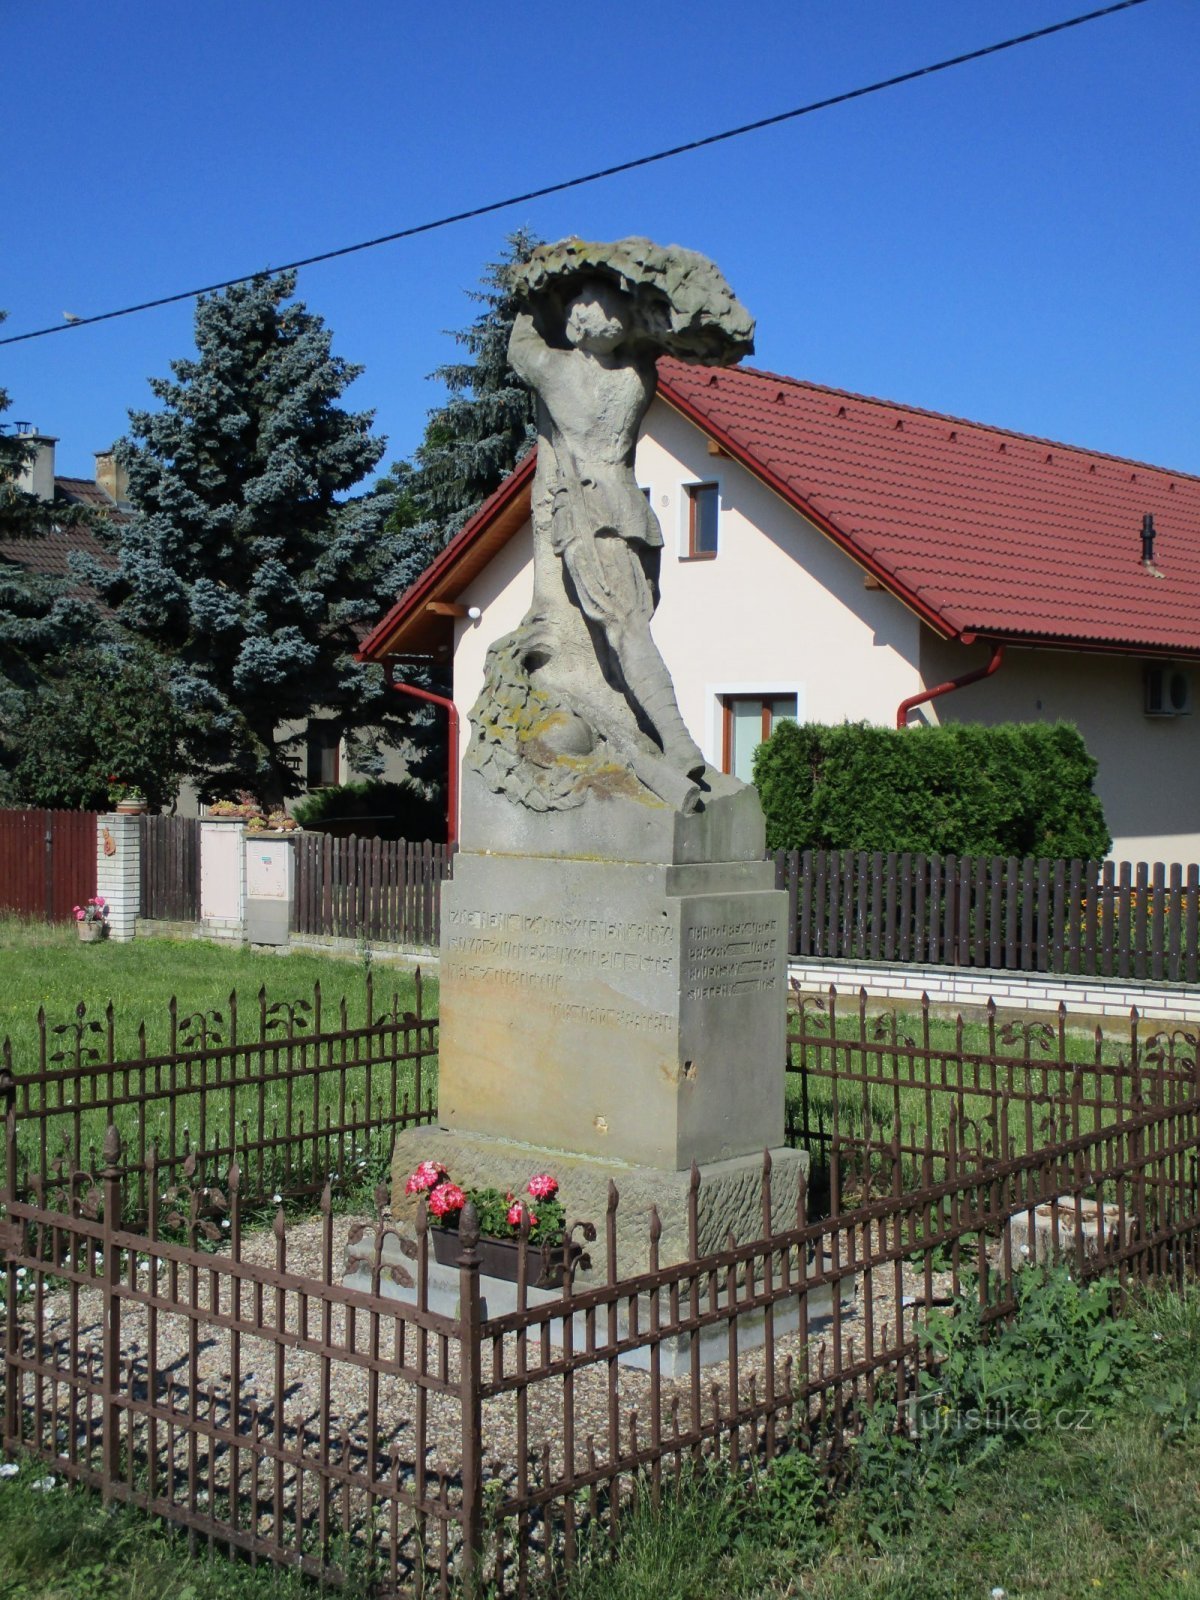 Monument to the fallen (Podoliby, 29.6.2019/XNUMX/XNUMX)